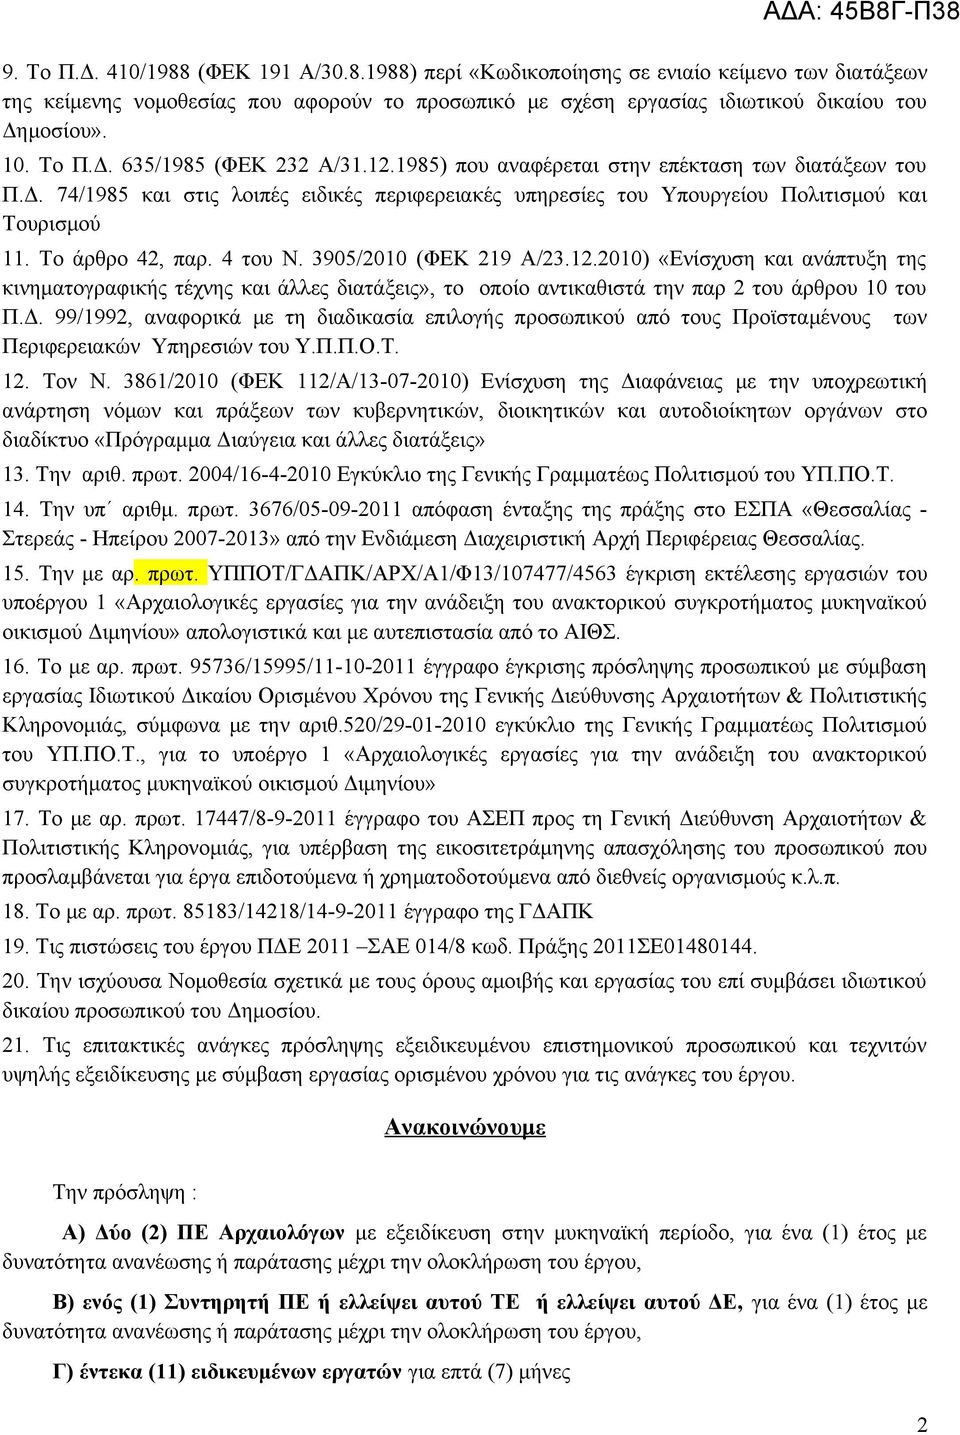 Το άρθρο 42, παρ. 4 του Ν. 3905/2010 (ΦΕΚ 219 Α/23.12.2010) «Ενίσχυση και ανάπτυξη της κινηματογραφικής τέχνης και άλλες διατάξεις», το οποίο αντικαθιστά την παρ 2 του άρθρου 10 του Π.Δ.